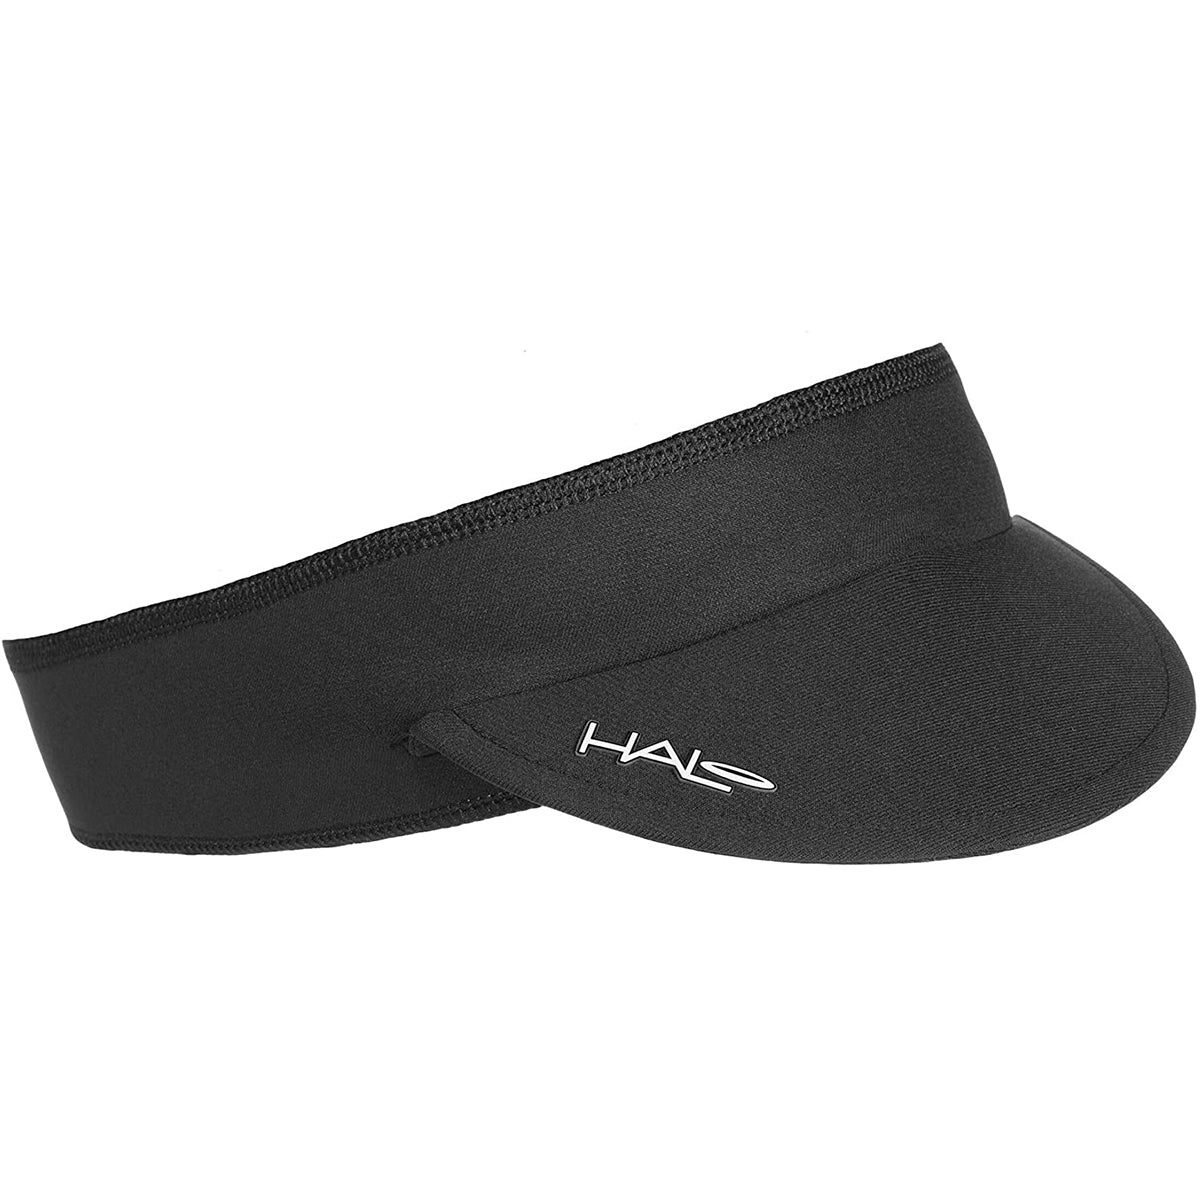 Halo Headband Visorband Visor - Black Halo